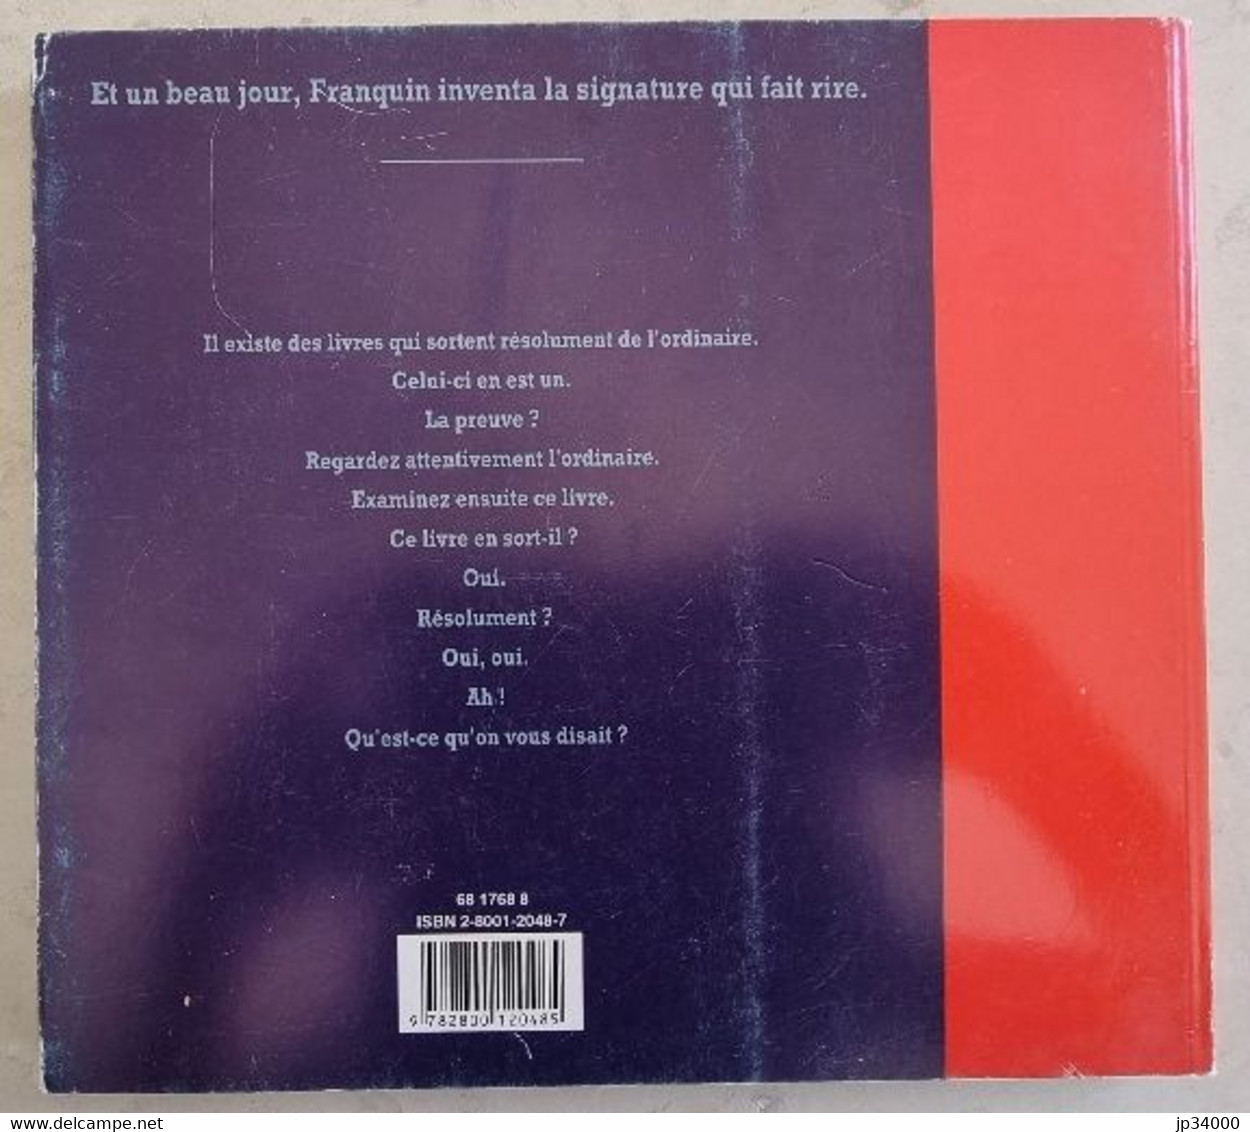 SIGNE FRANQUIN publié chez Dupuis. Edition originale 1992. Très bon état